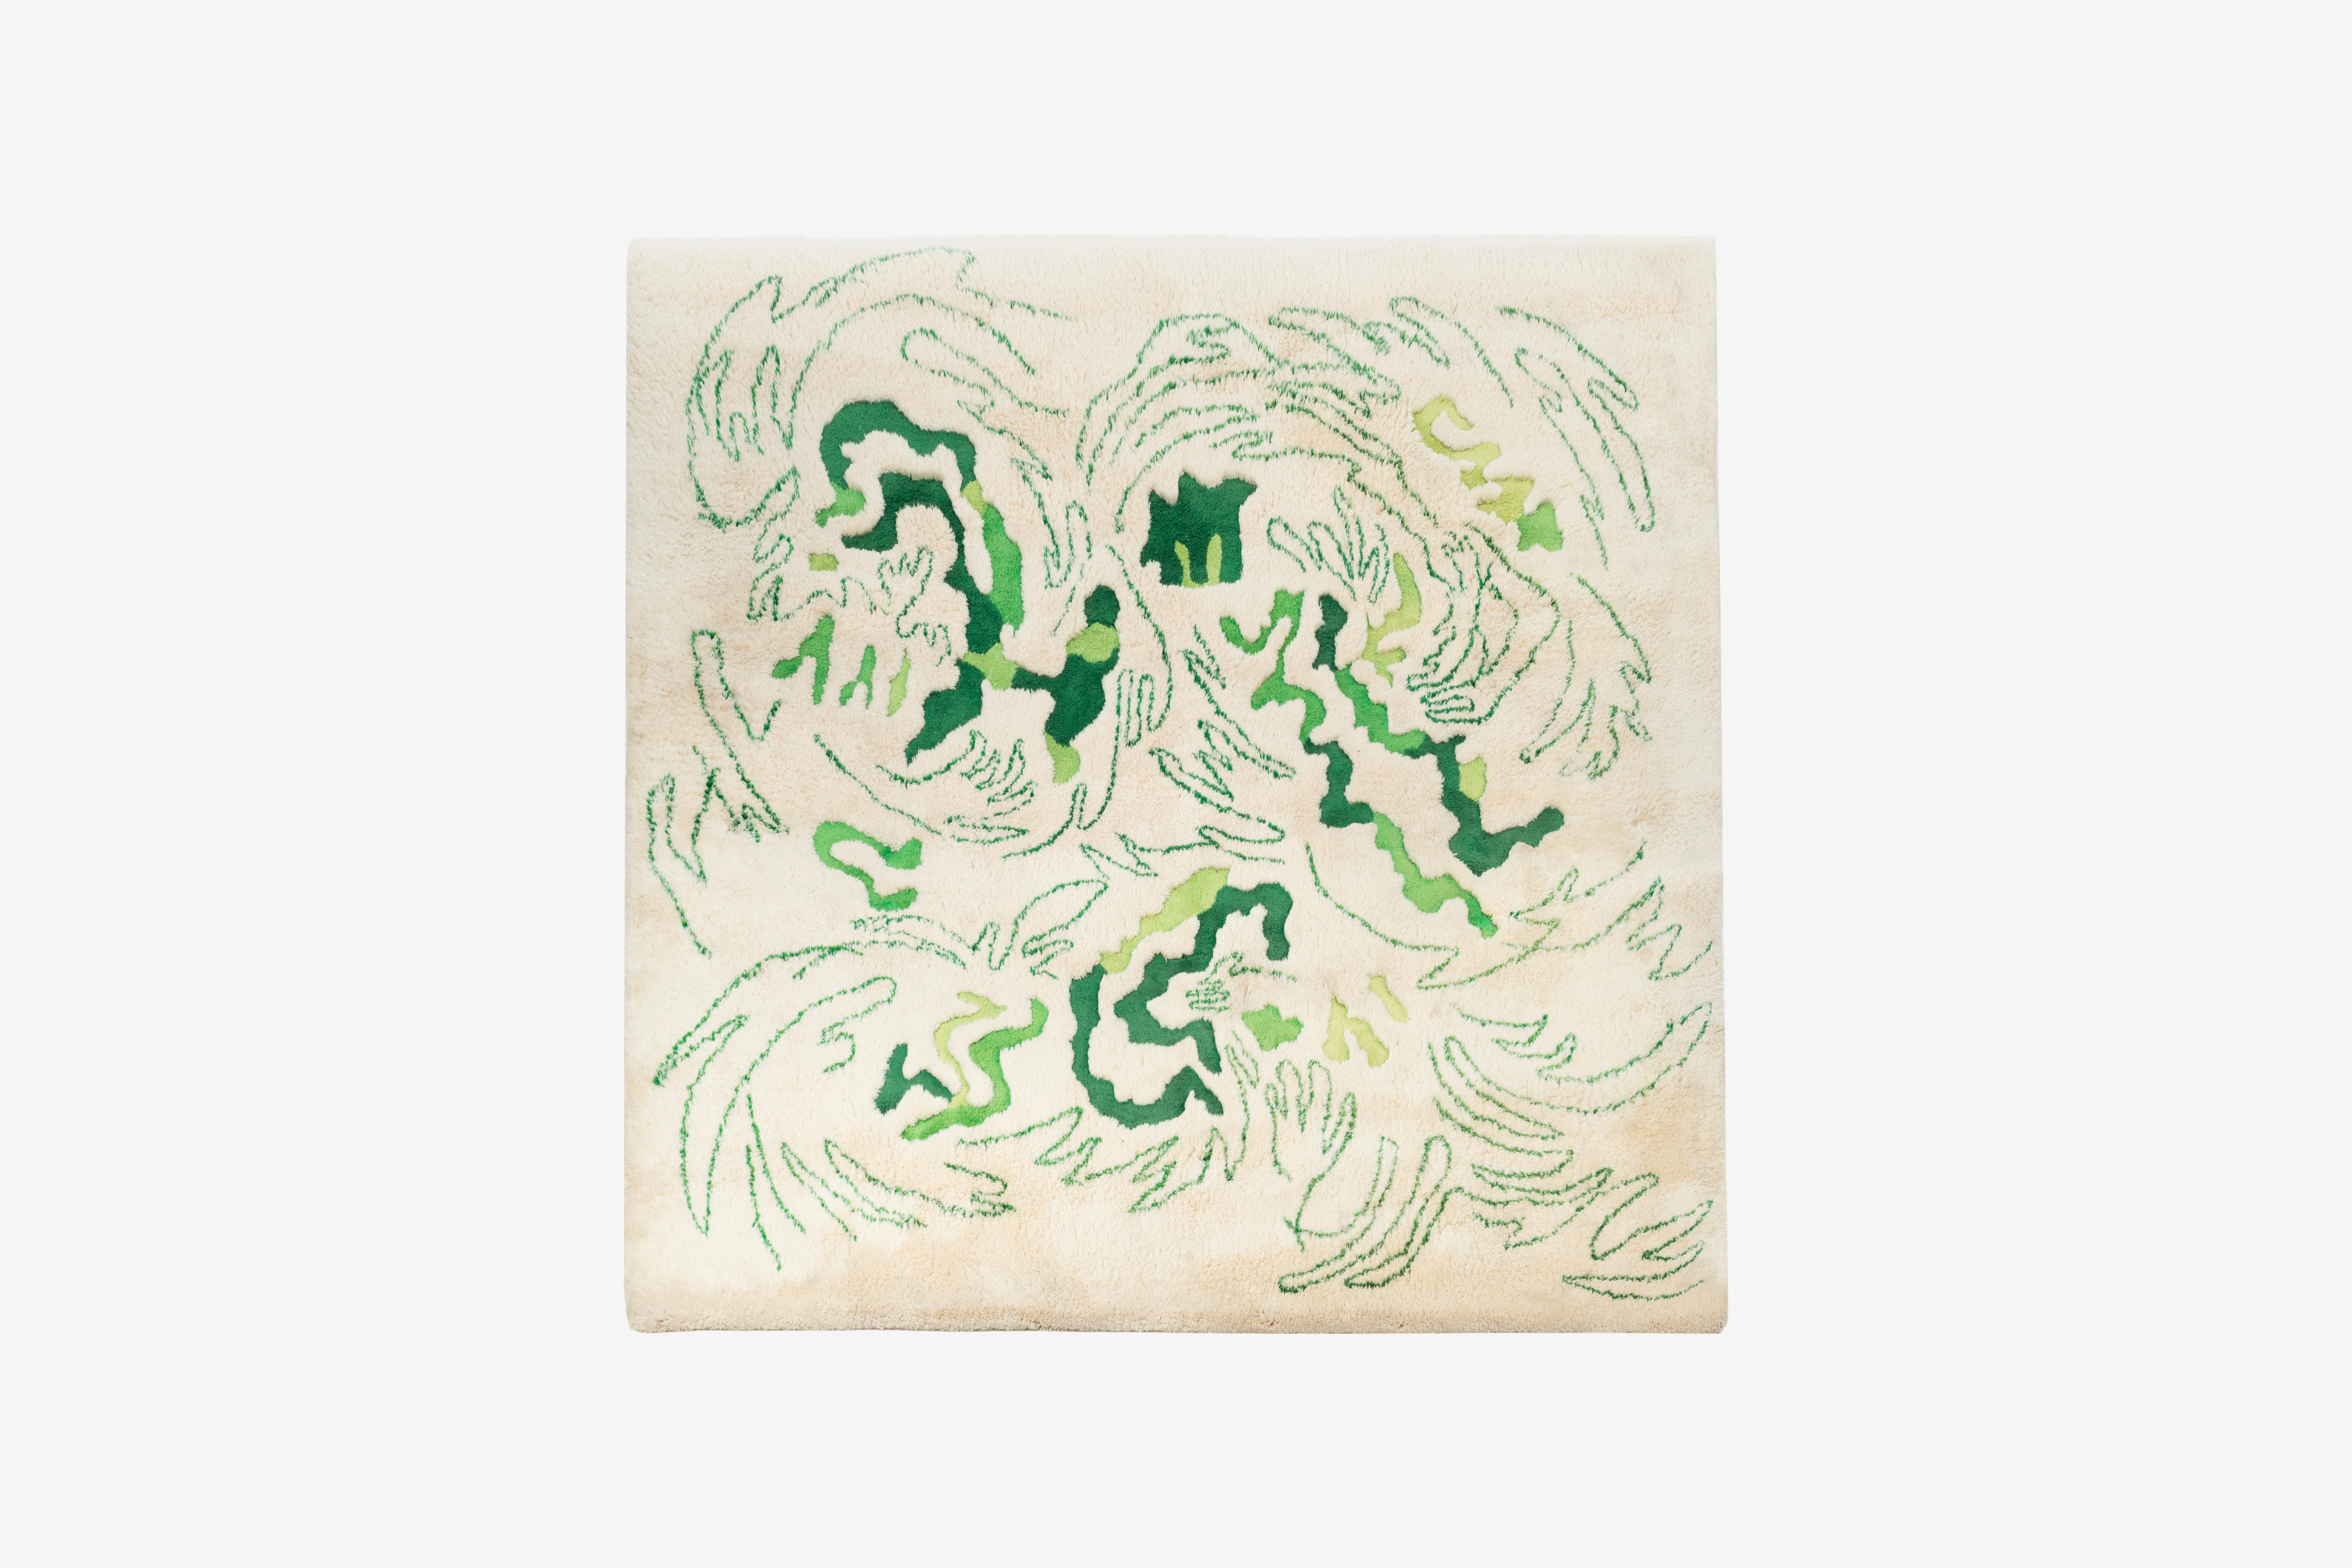 Abstrakter Teppich von Edward Fields.  Cremefarbener Untergrund mit mehreren grünen, tarnfarbenen Schnörkeln.  